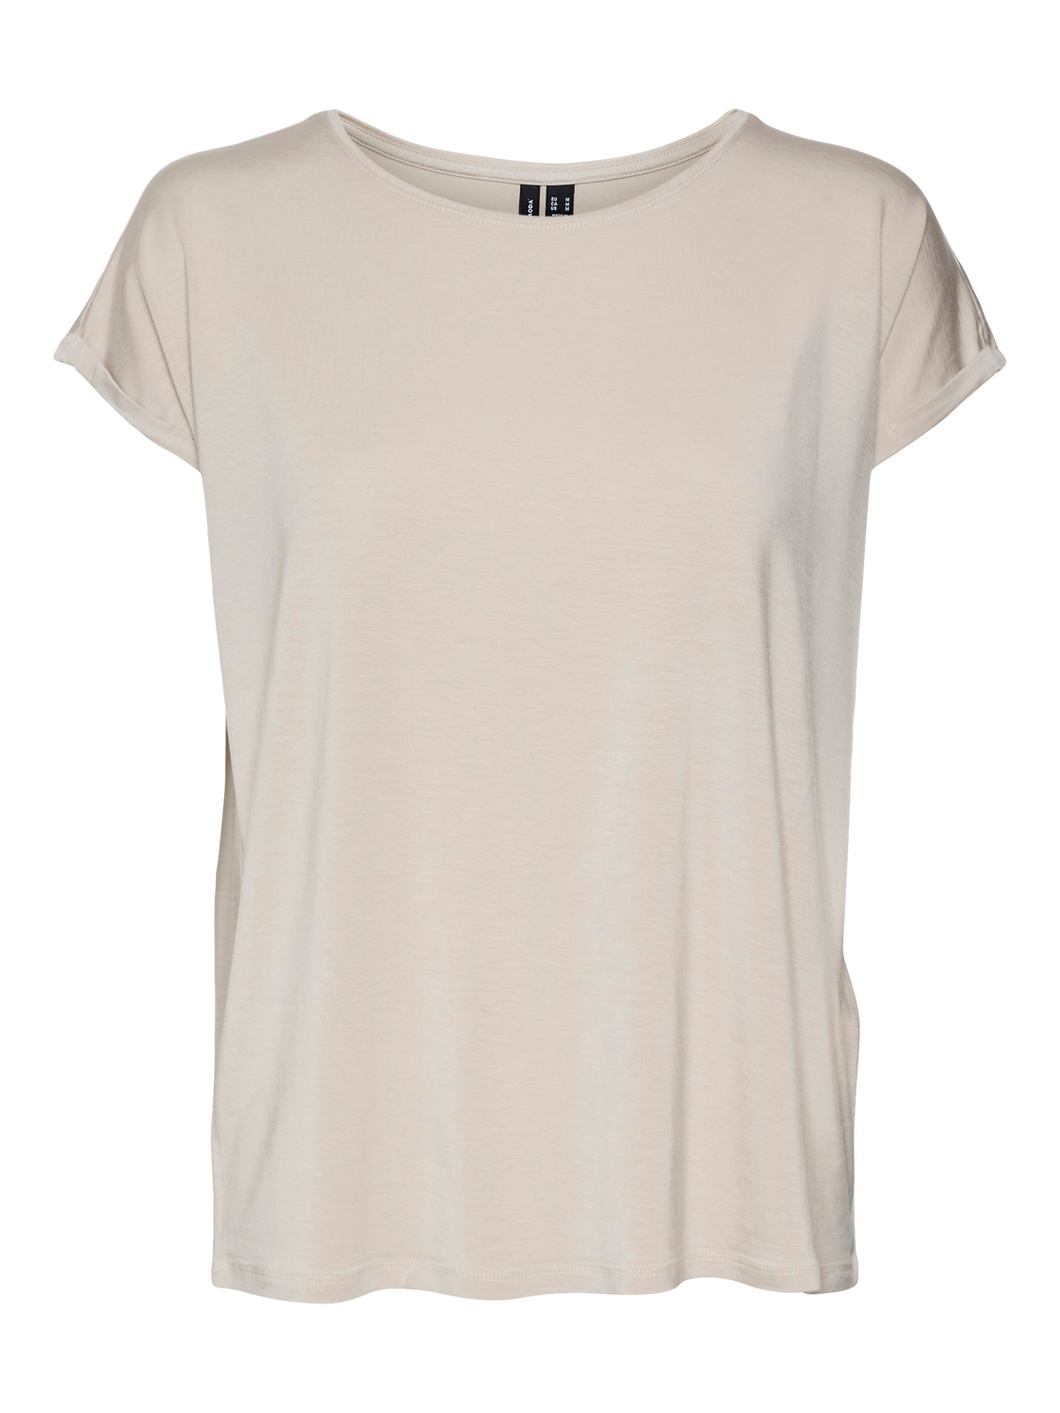 VMAVA T-Shirt - Silver Lining